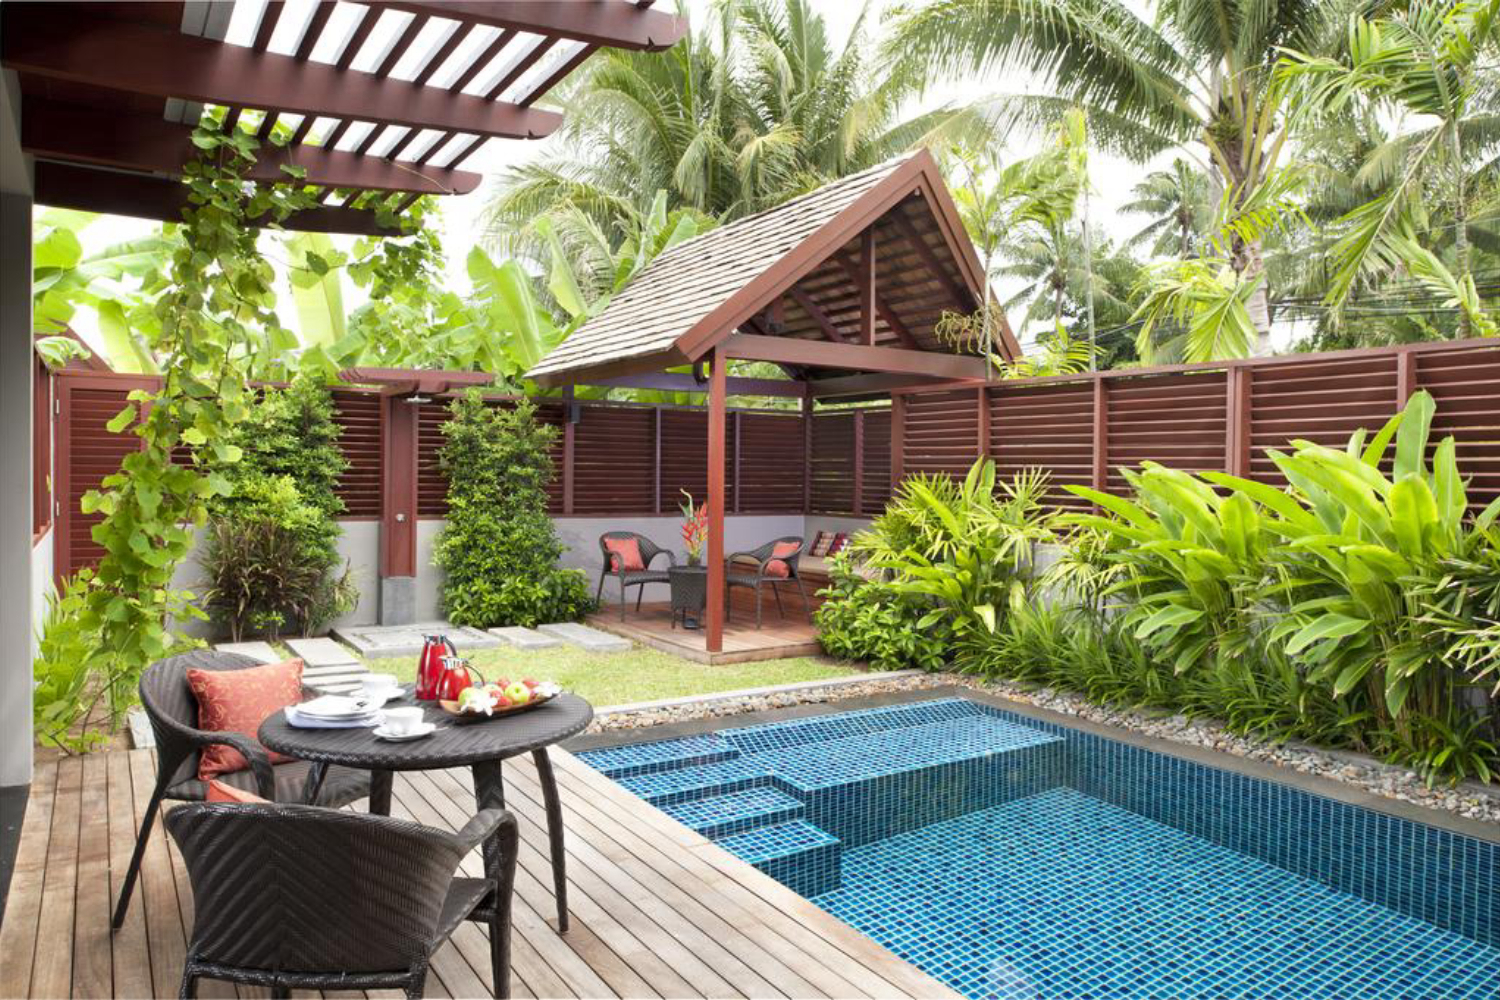 Anantara Phuket Suites & Villas - Image 2